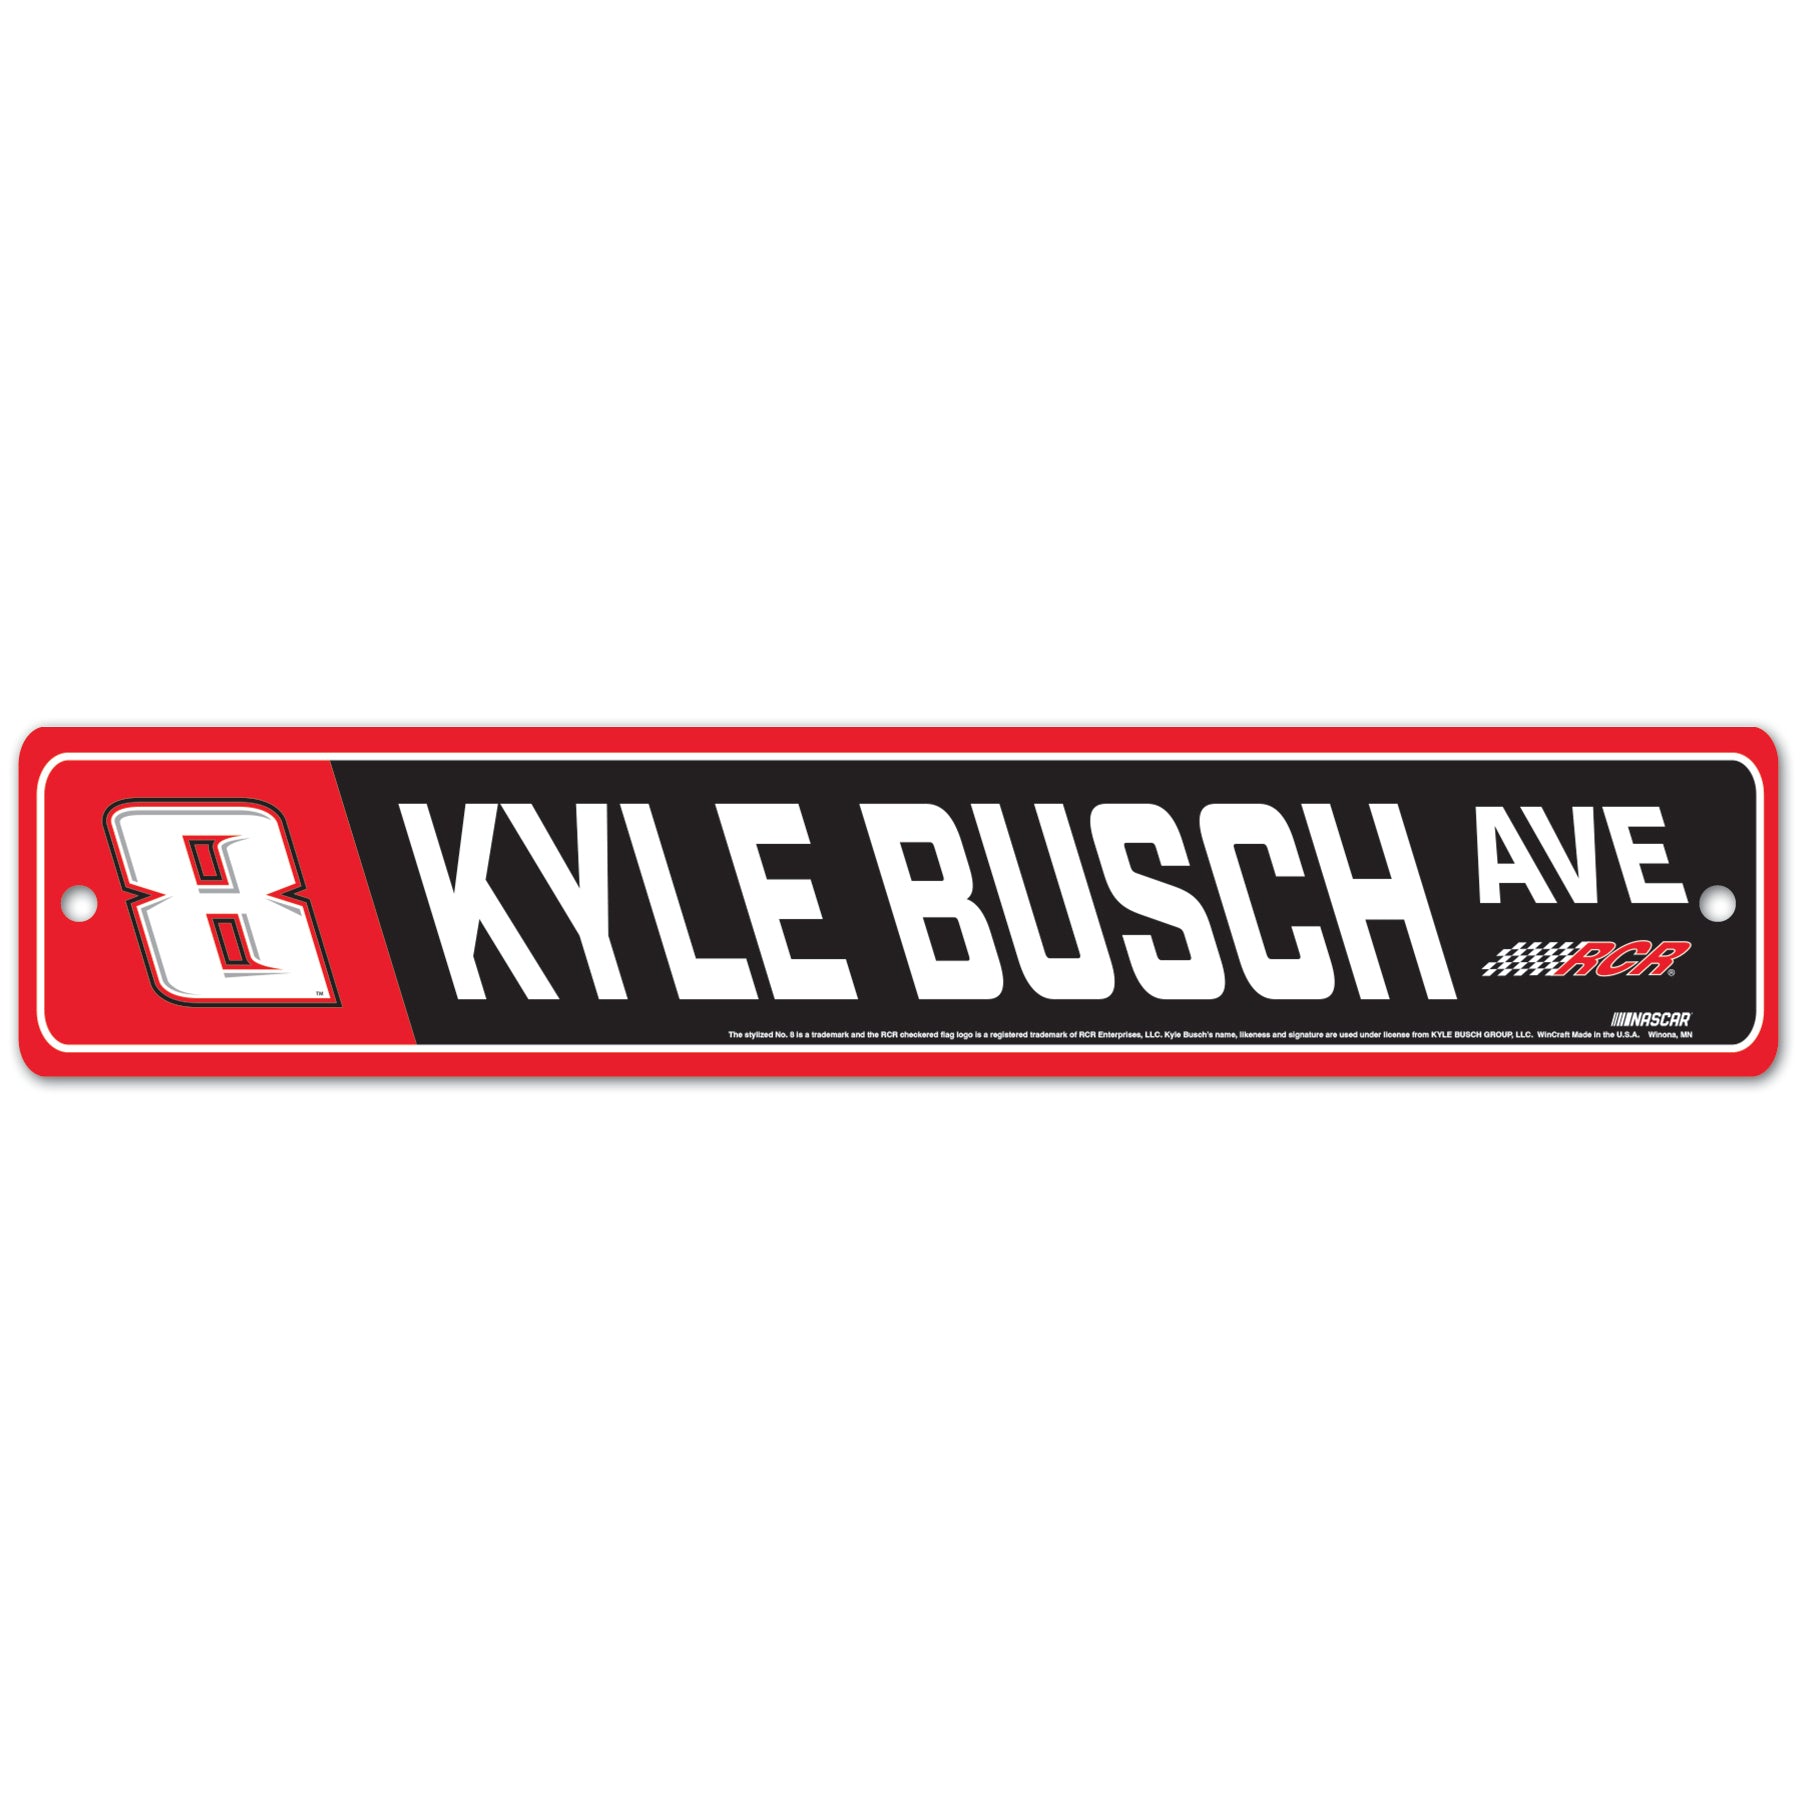 KYLE BUSCH #8 STREET SIGN